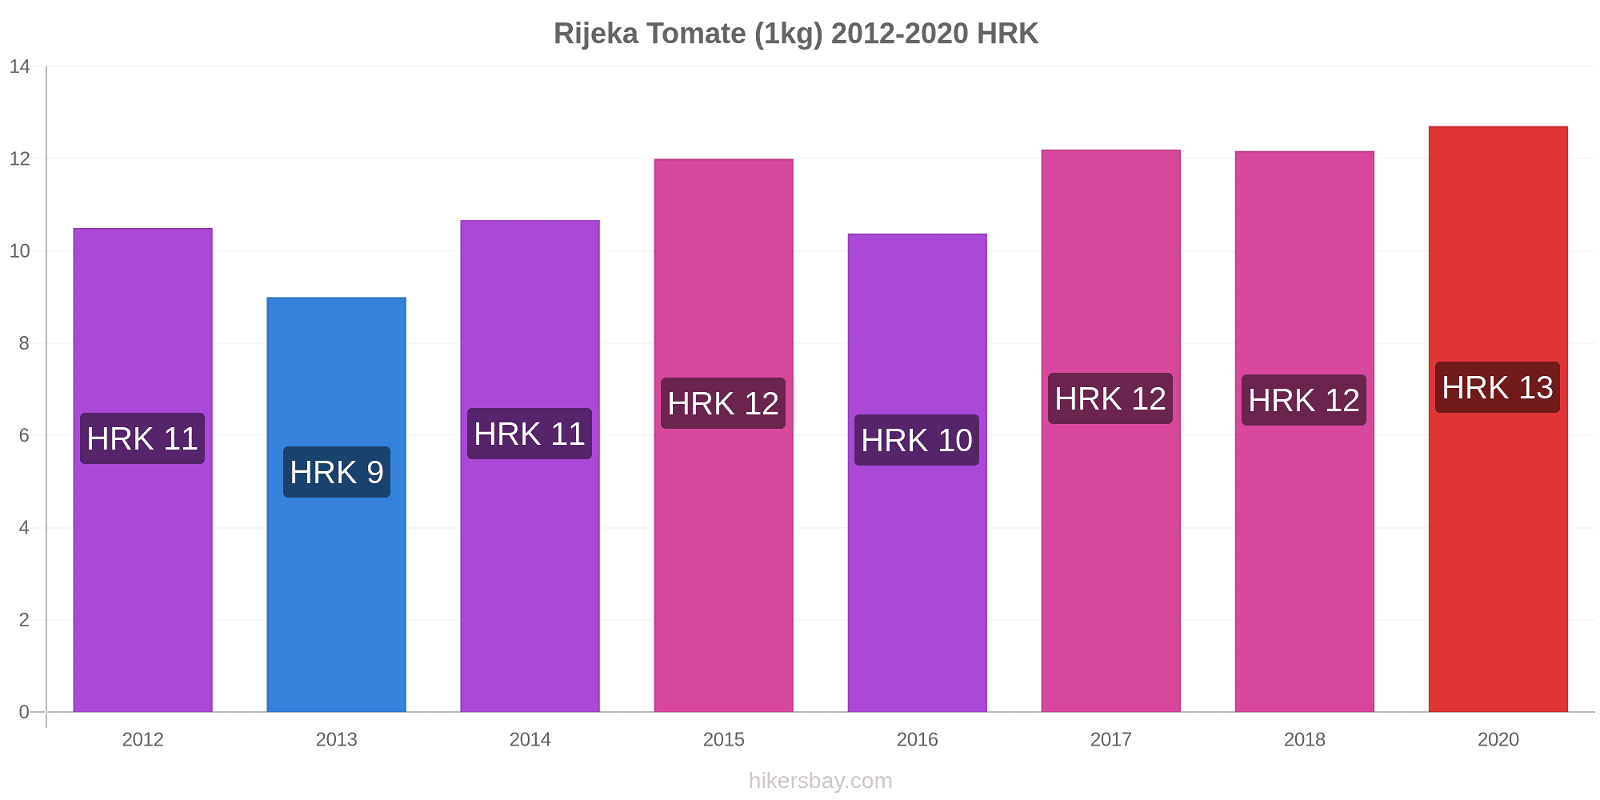 Rijeka changements de prix Tomate (1kg) hikersbay.com